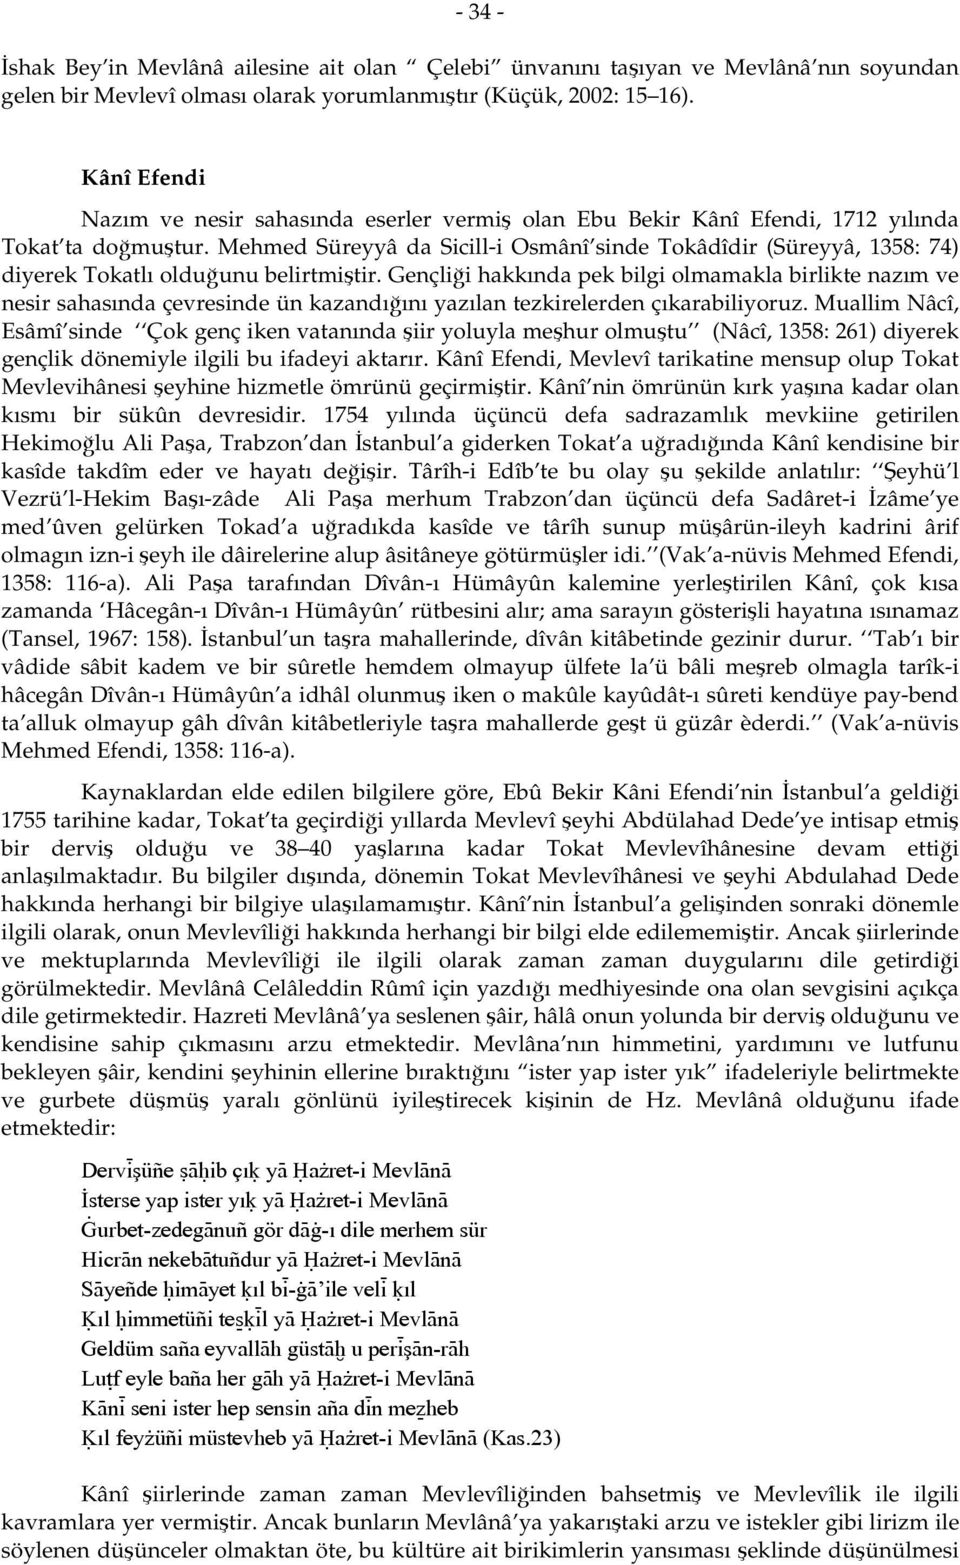 Mehmed Süreyyâ da Sicill-i Osmânî sinde Tokâdîdir (Süreyyâ, 1358: 74) diyerek Tokatlı olduğunu belirtmiştir.